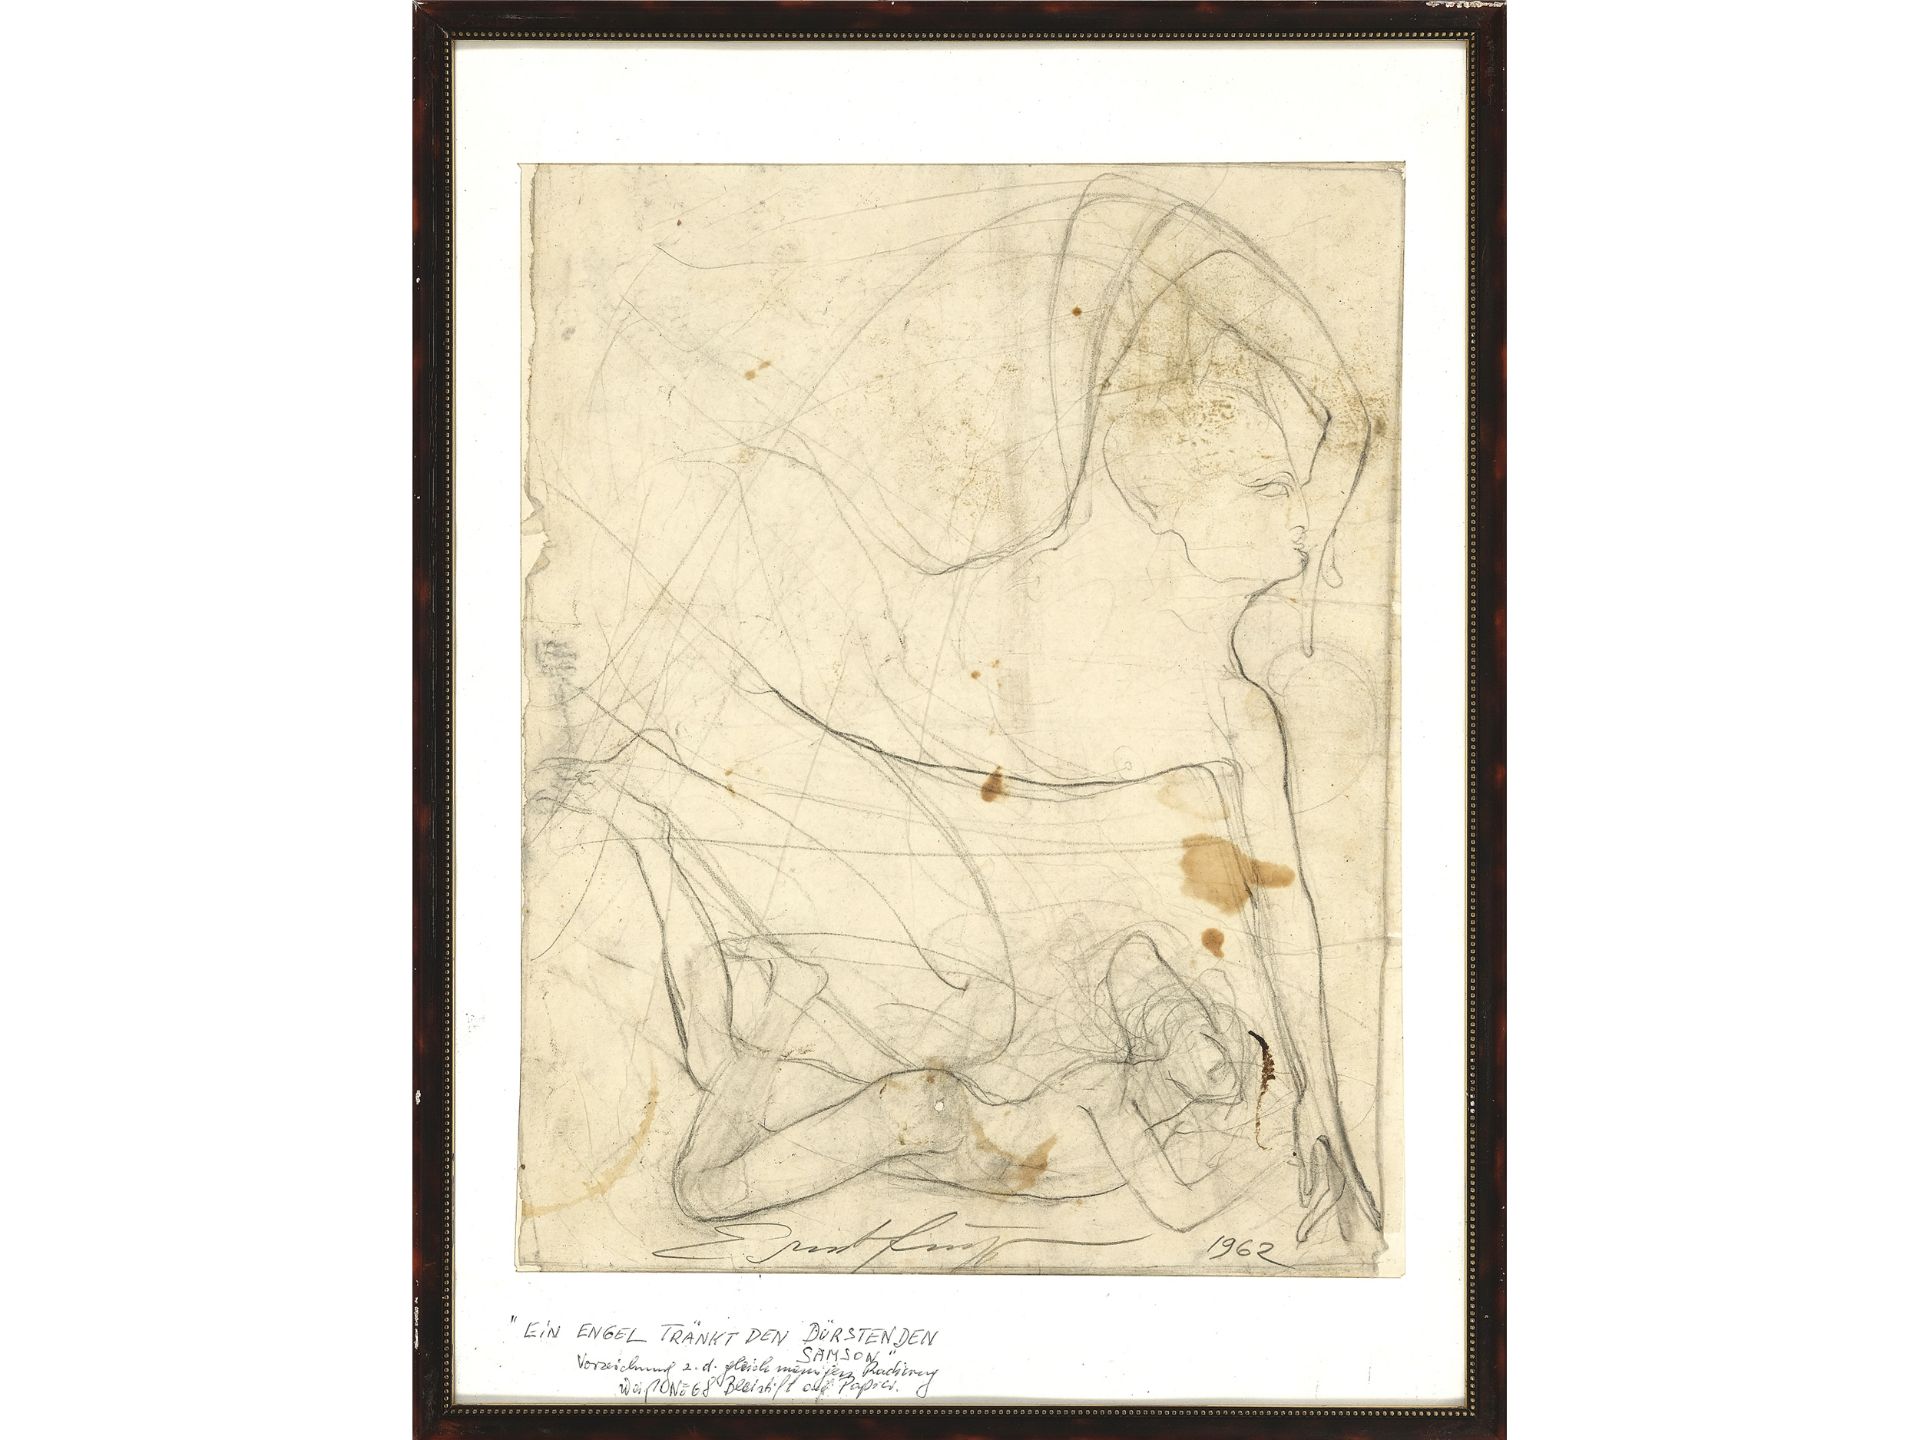 Ernst Fuchs, Vienna 1930 - 2015 Vienna, An angel waters the thirsty Samson - Image 2 of 4